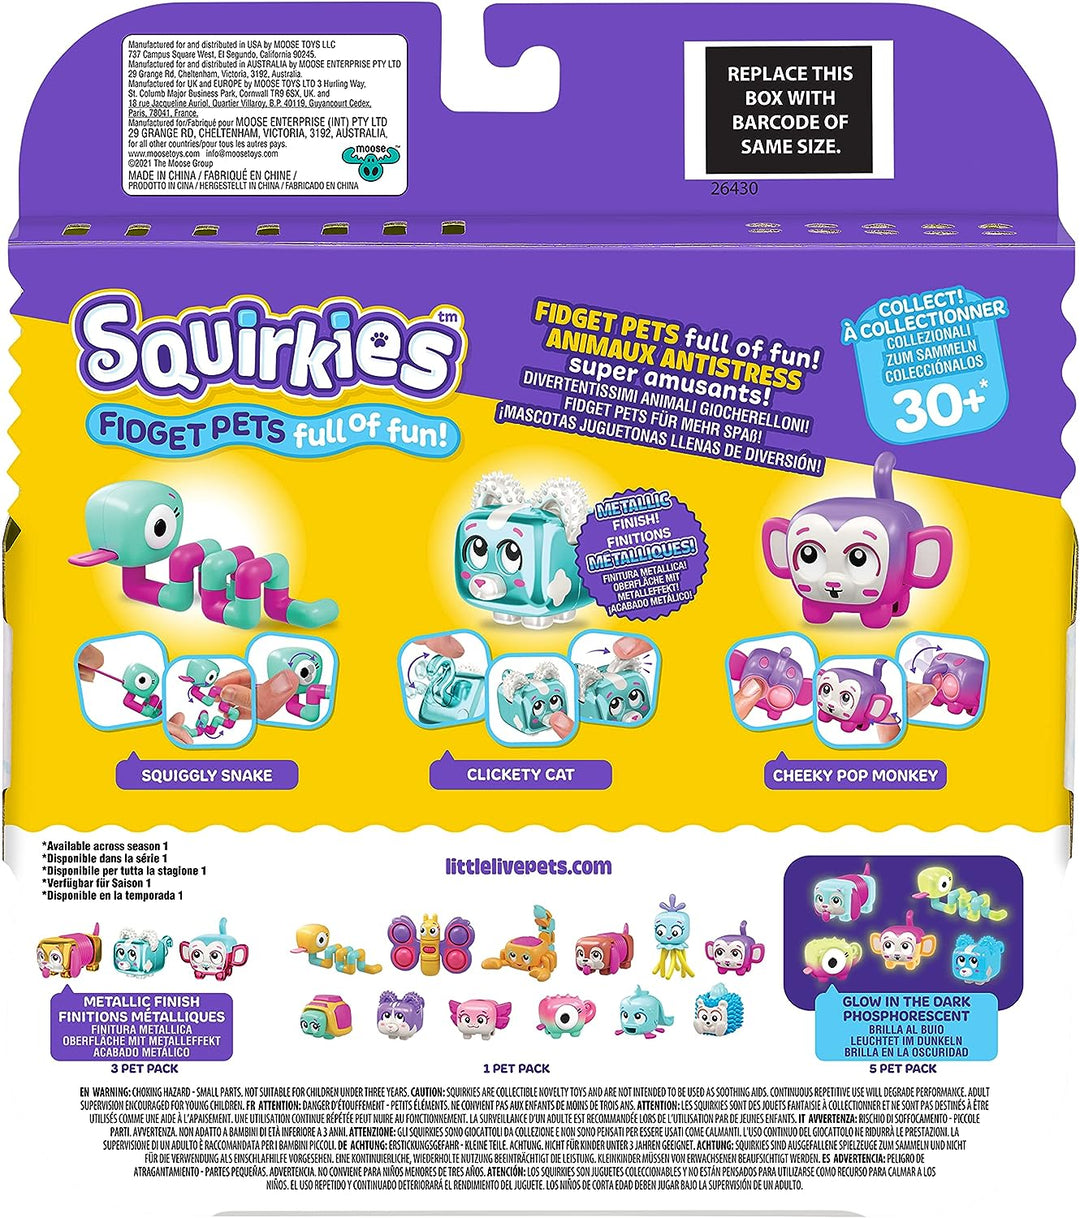 Little Live Pets - Squirkies | Interactive Fidget Toys, Fidget Feature